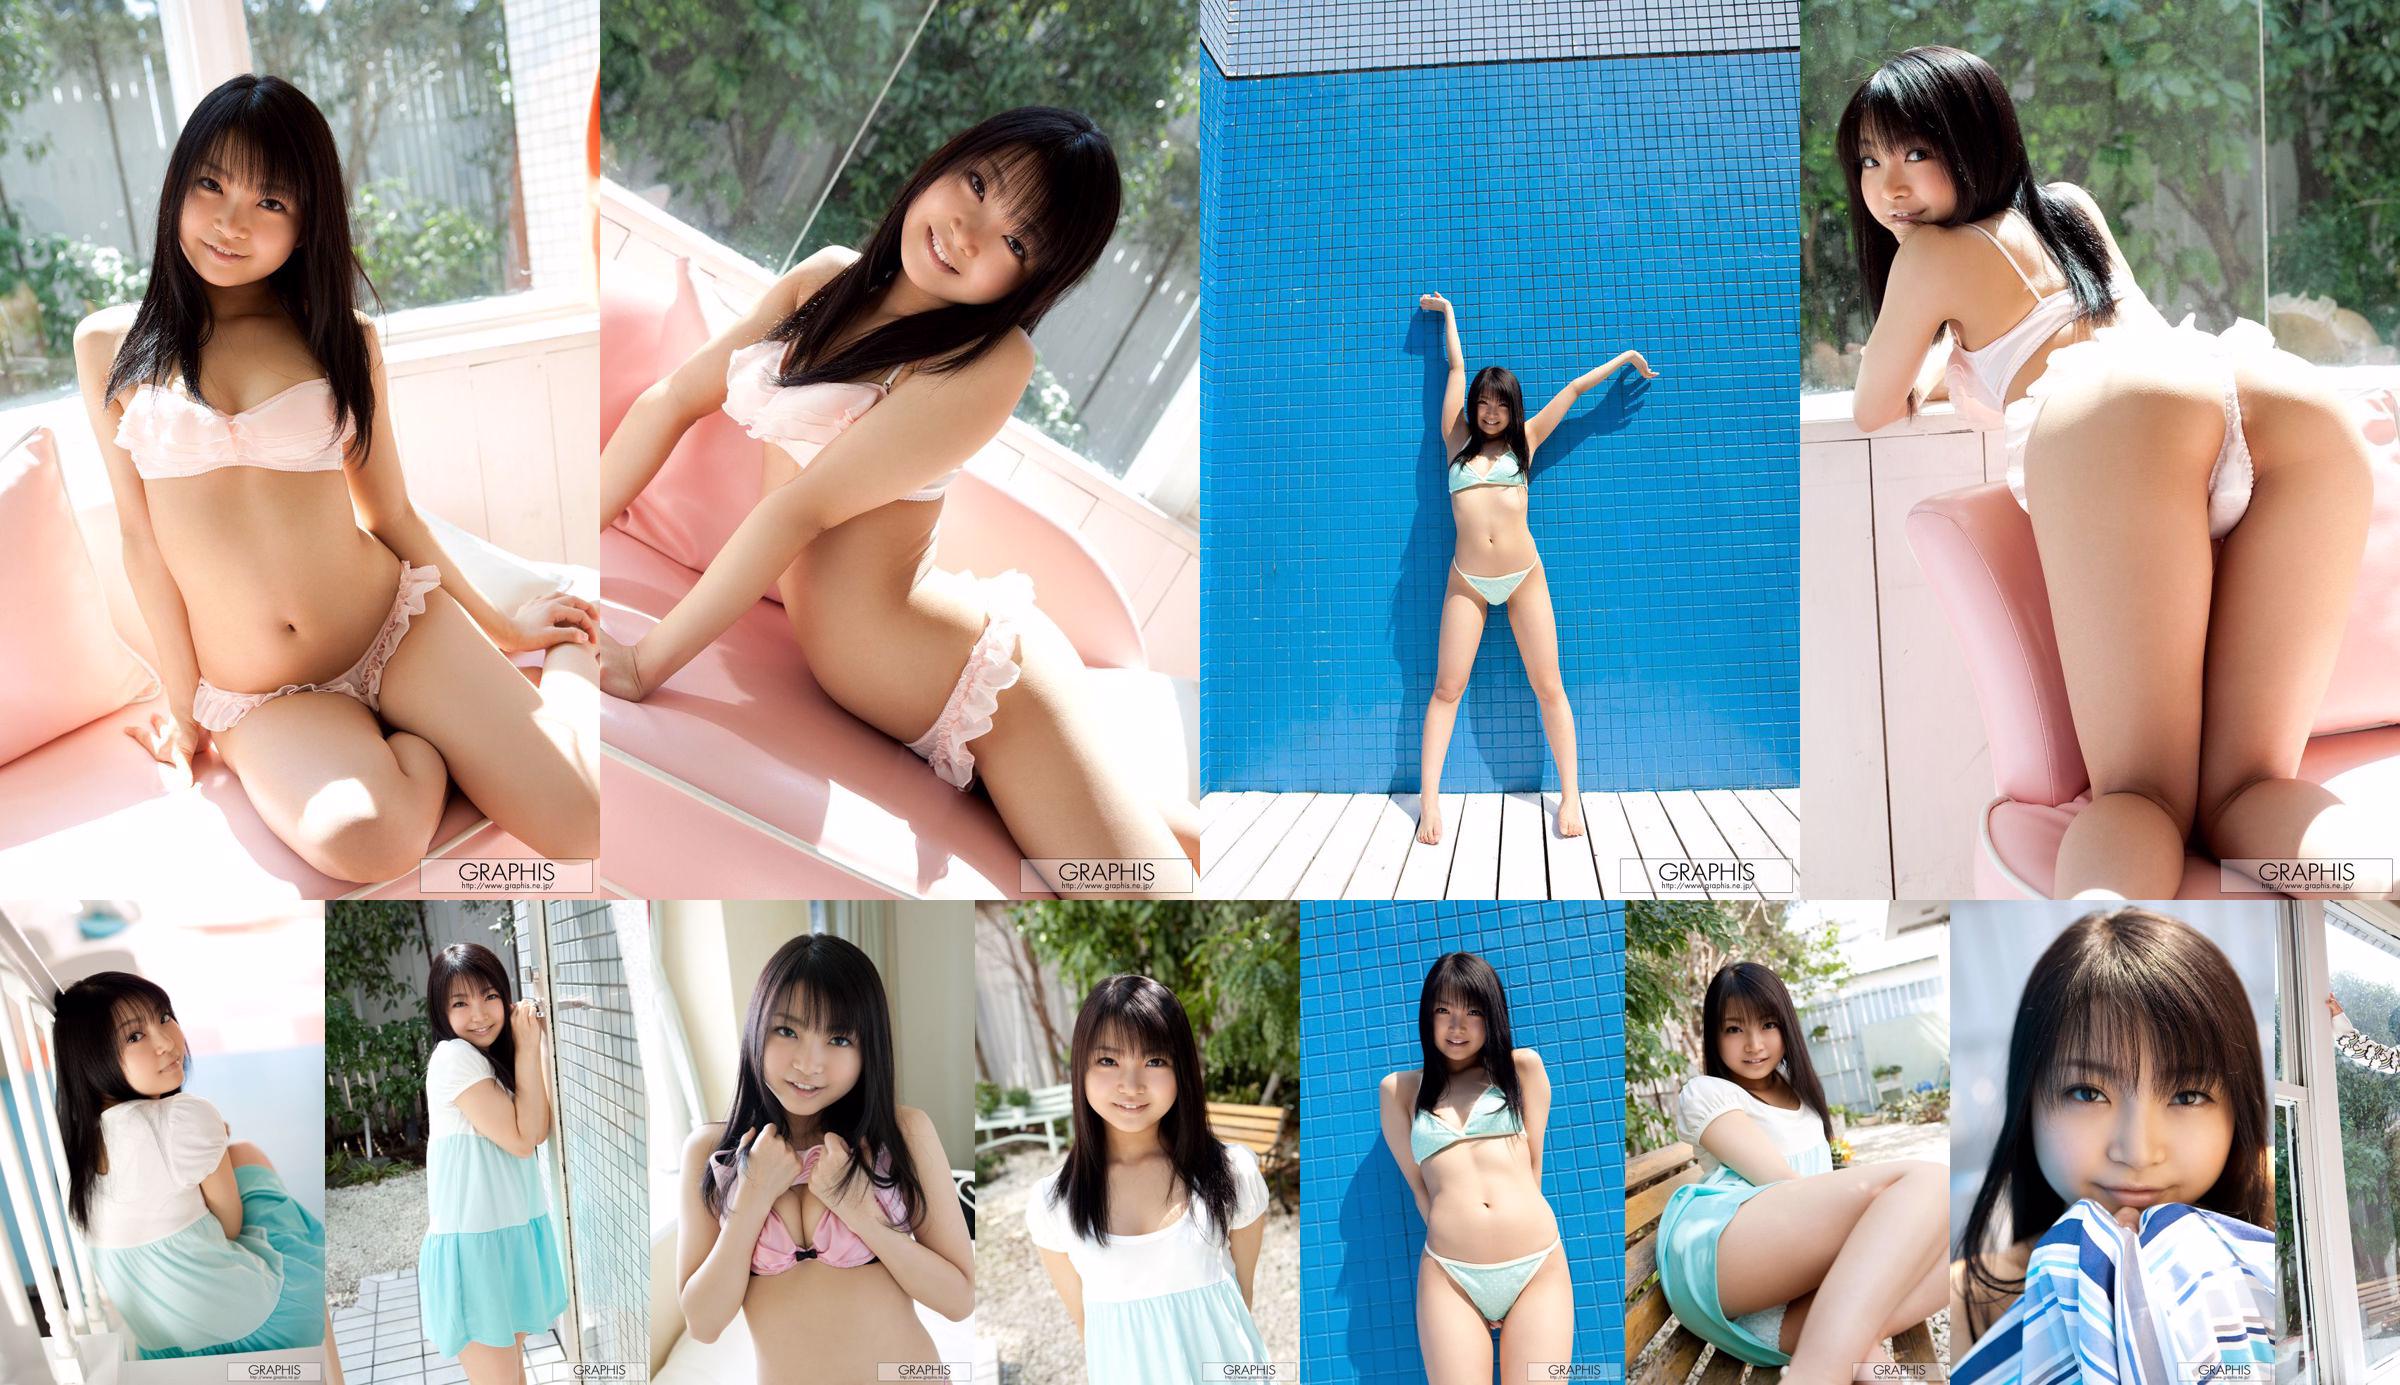 Chihiro Aoi / Chihiro Aoi [Graphis] Primera fotograbado Primera hija No.170daf Página 3